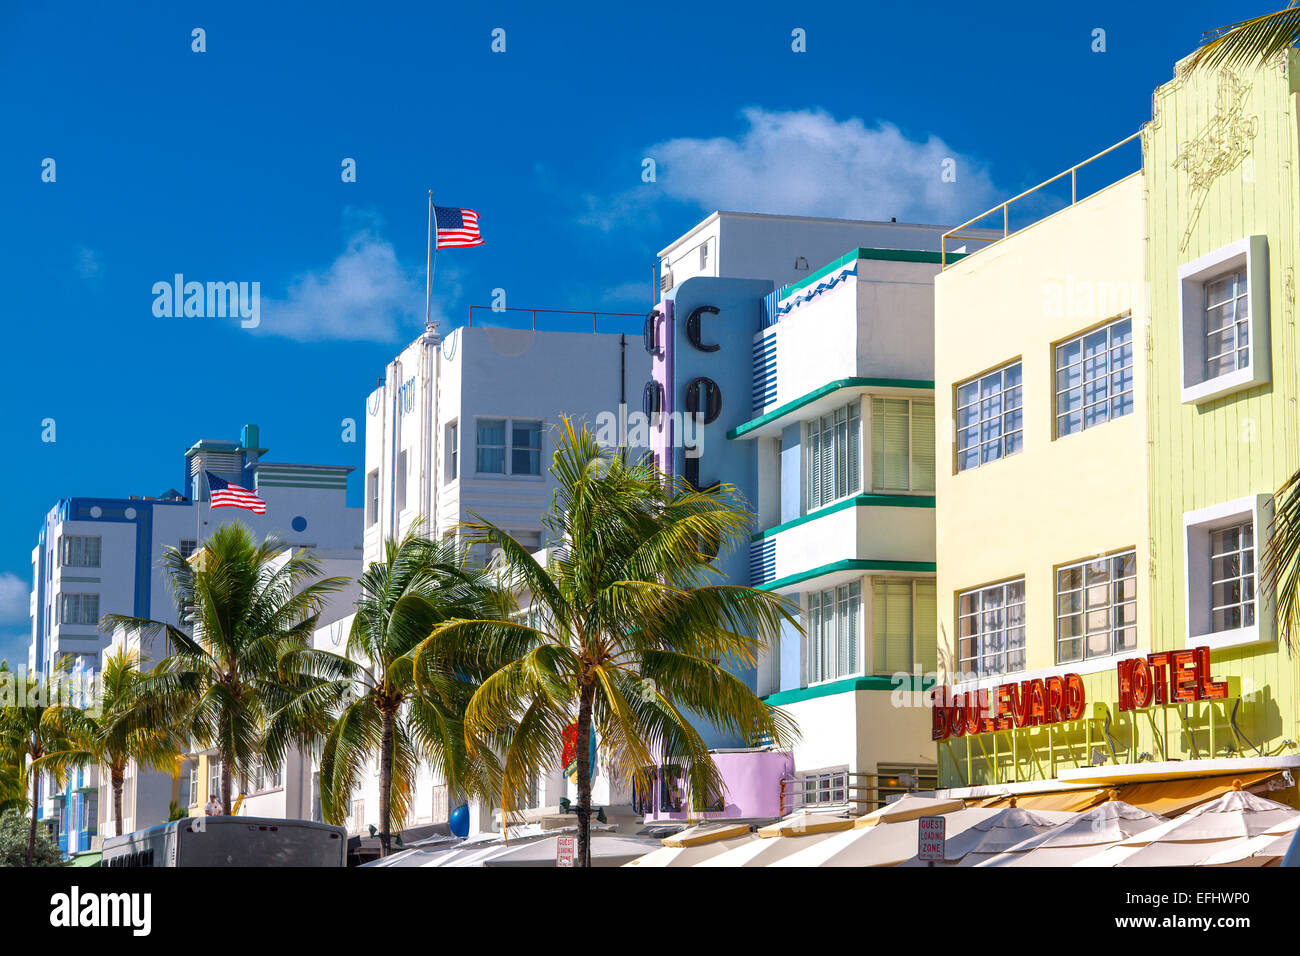 Impression sur Ocean Drive avec son architecture Art déco, South Beach, Miami, Floride, USA Banque D'Images